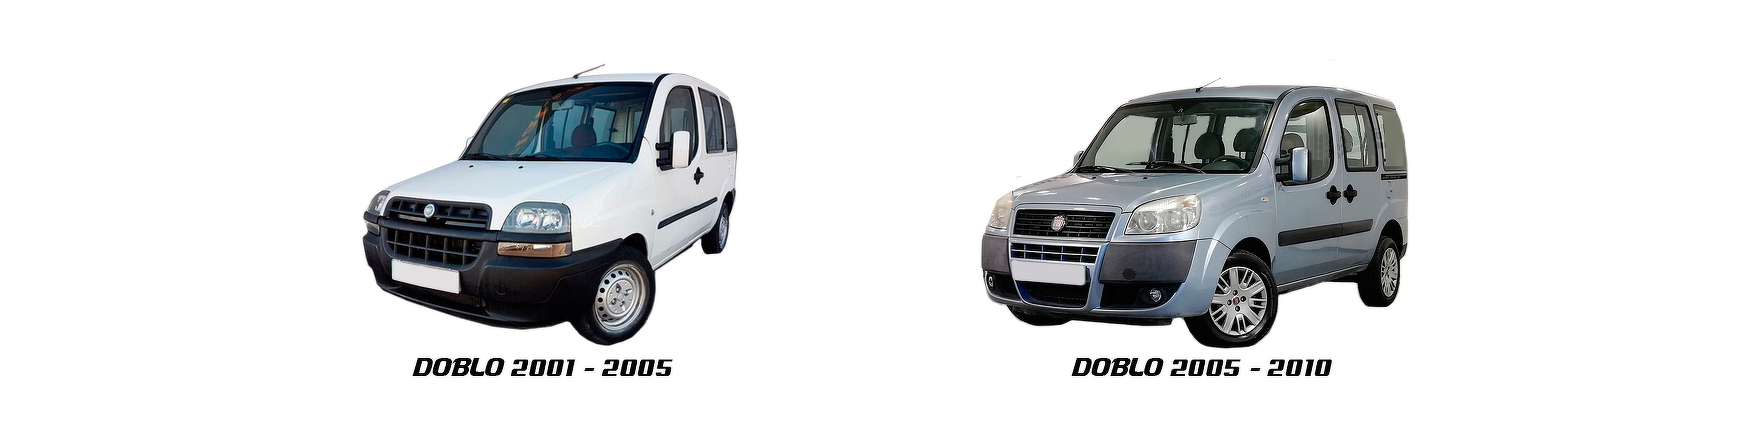 Recambios de Fiat Dobló de 2005, 2006, 2007, 2008, 2009 y 2010.